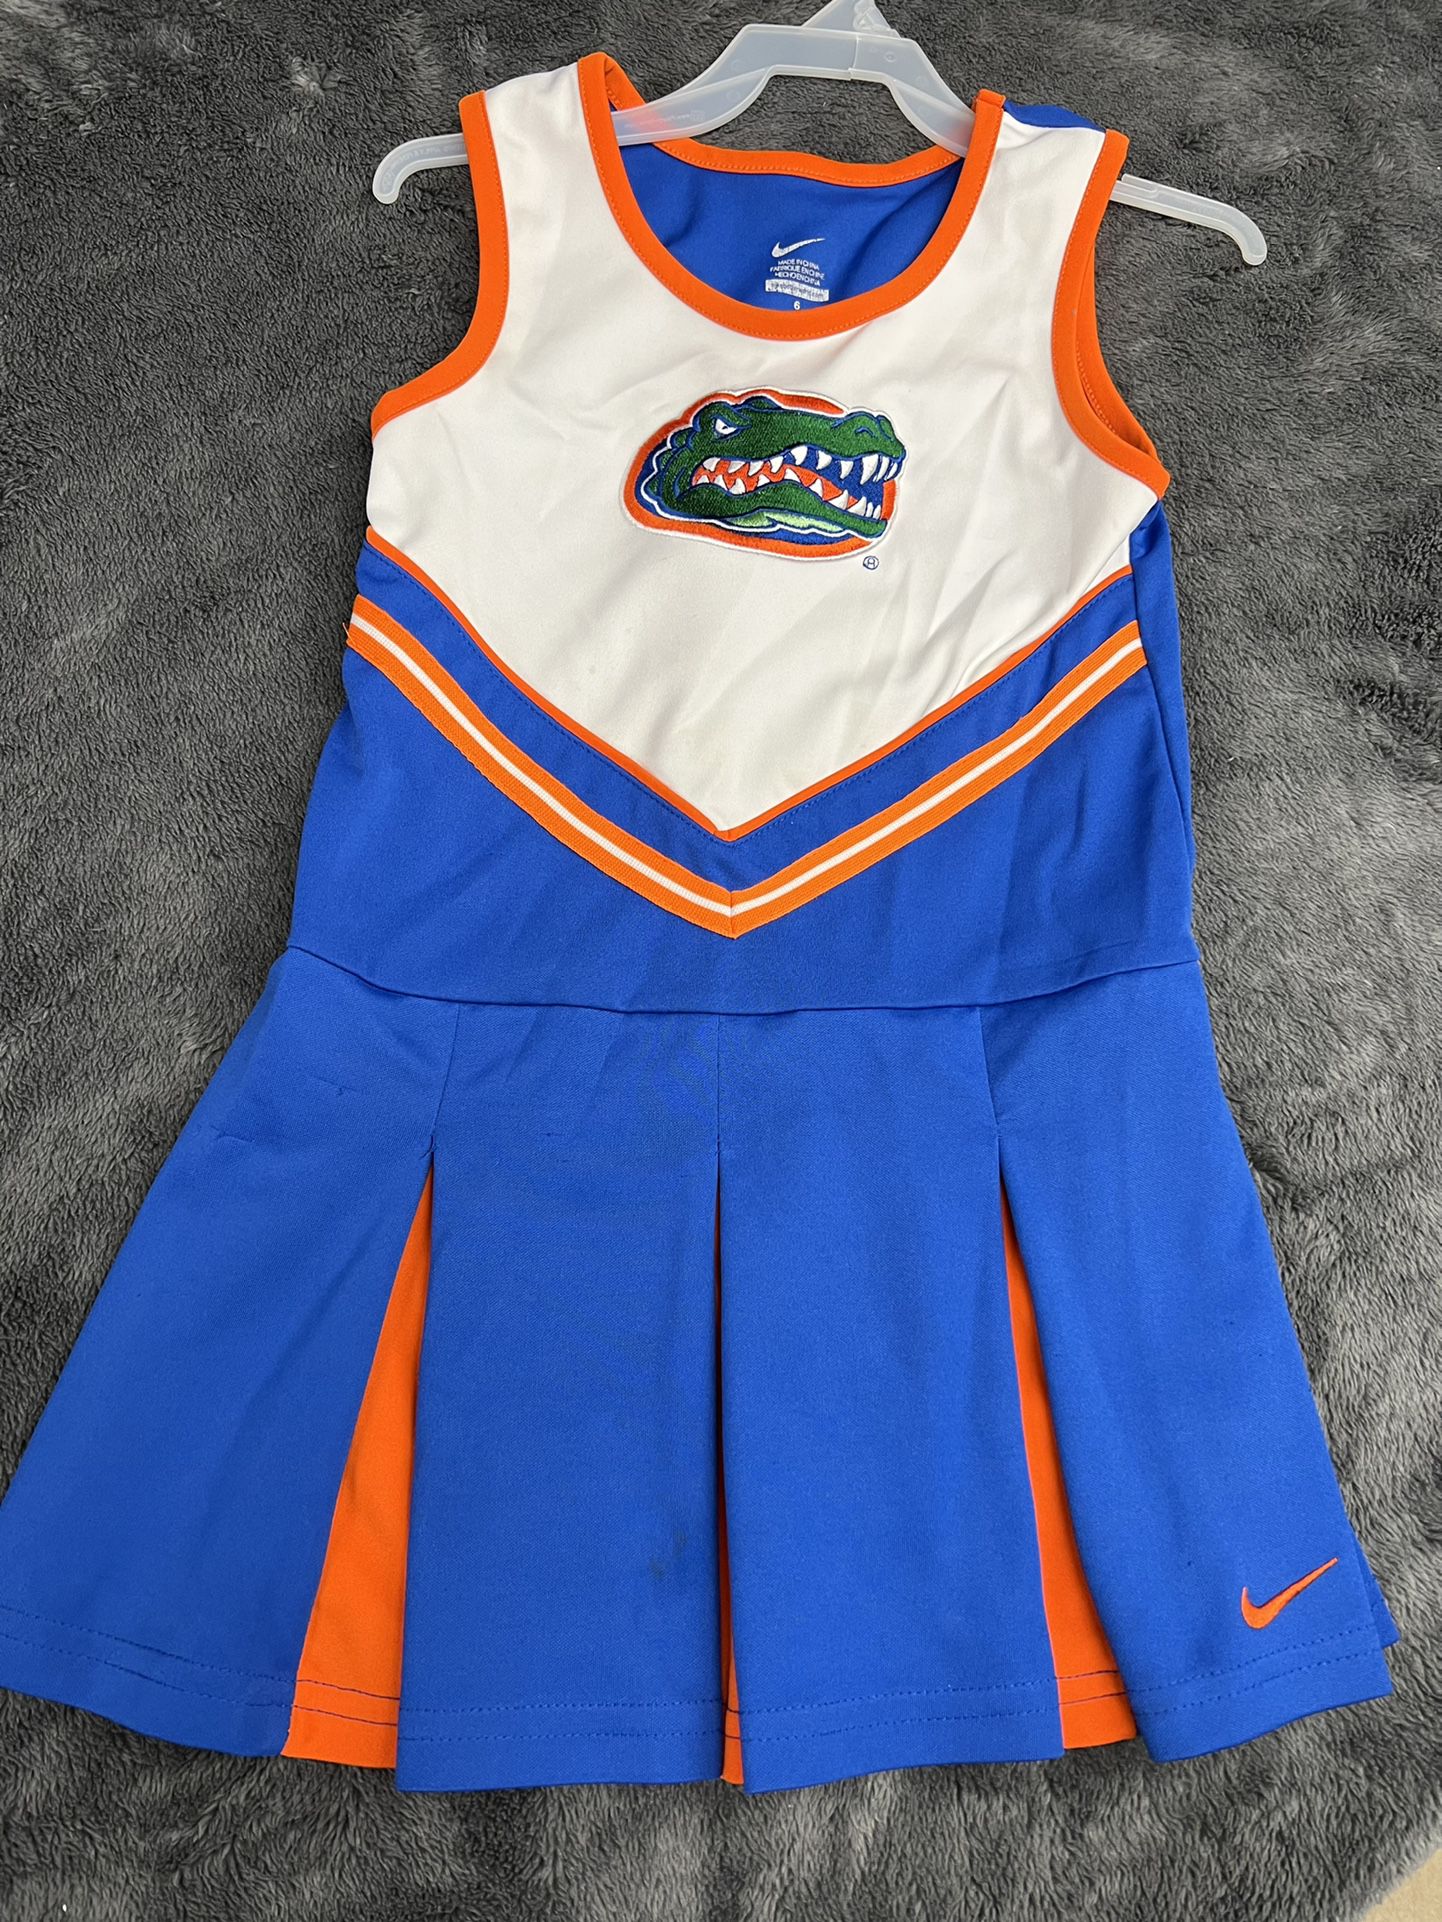 Nike Florida Gators Girls 6 Cheerleaders Outfit!  